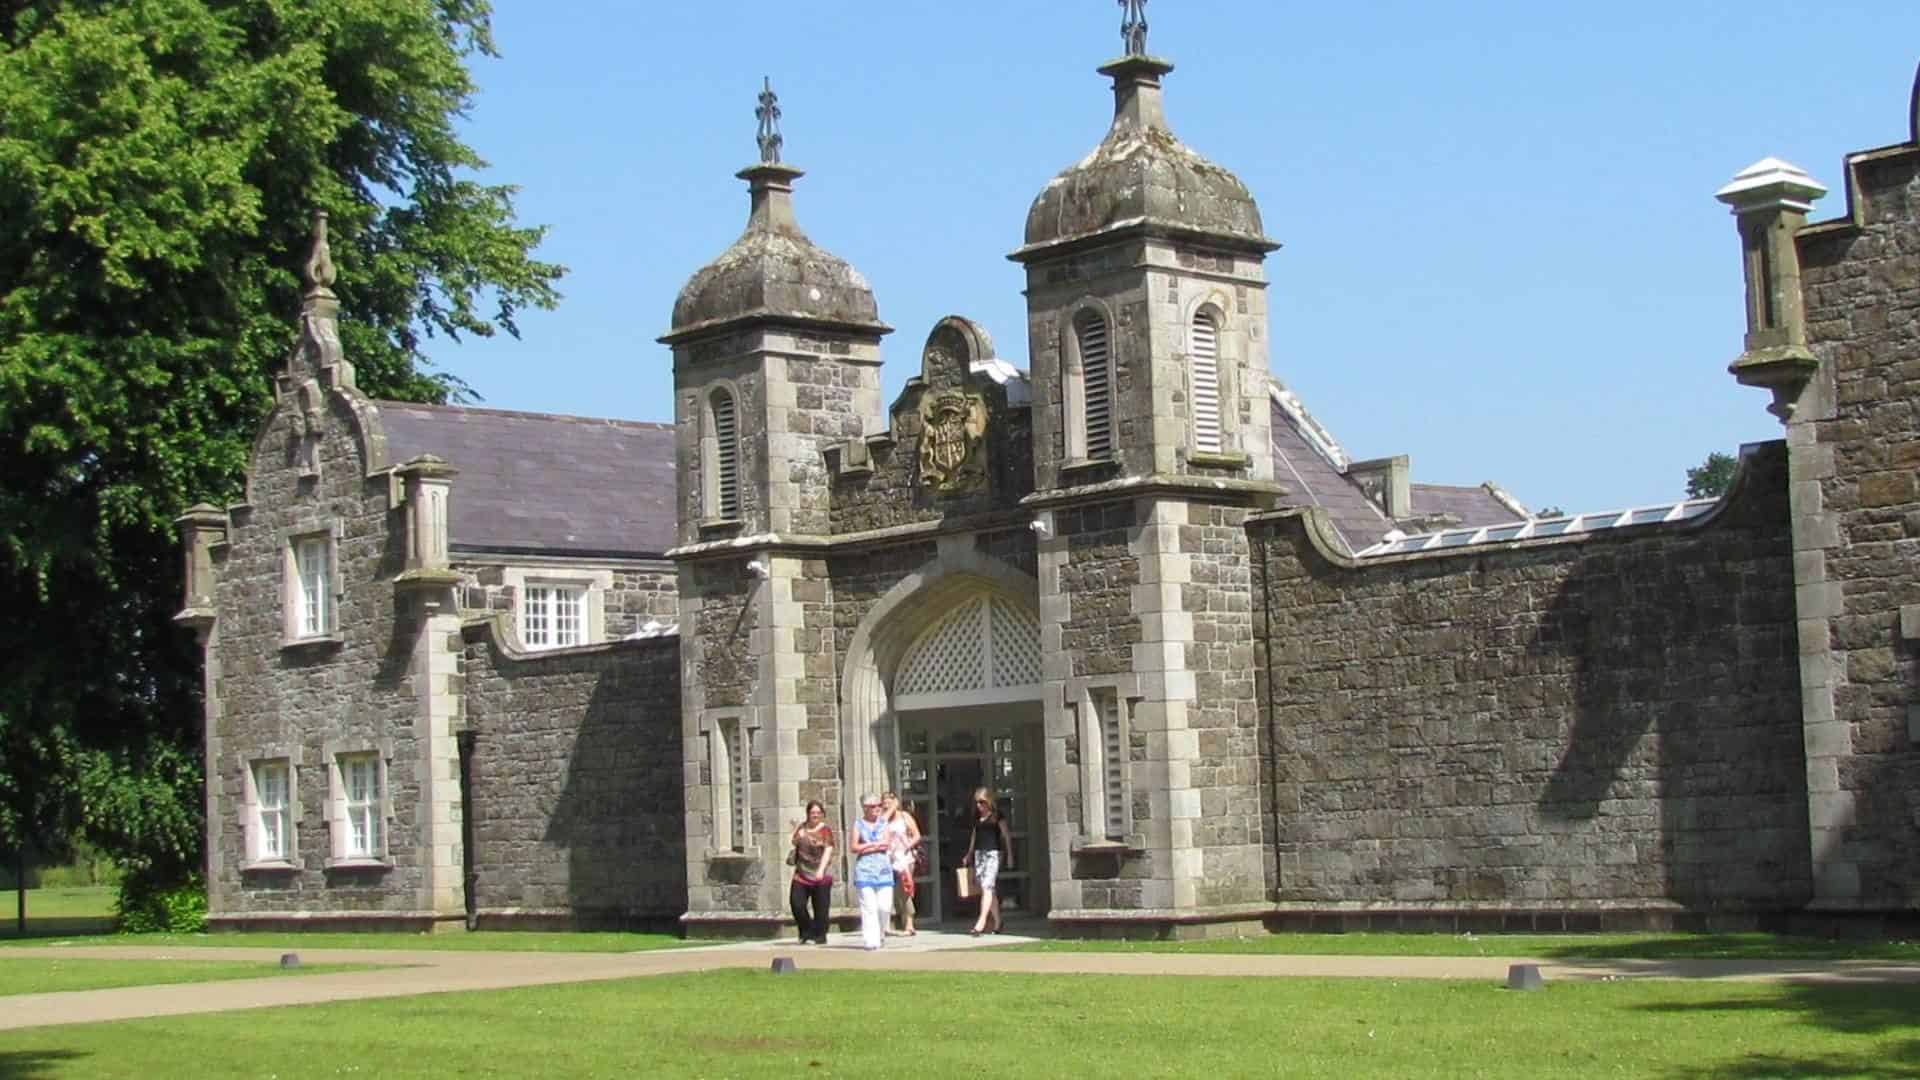 101 Landmarks in Northern Ireland